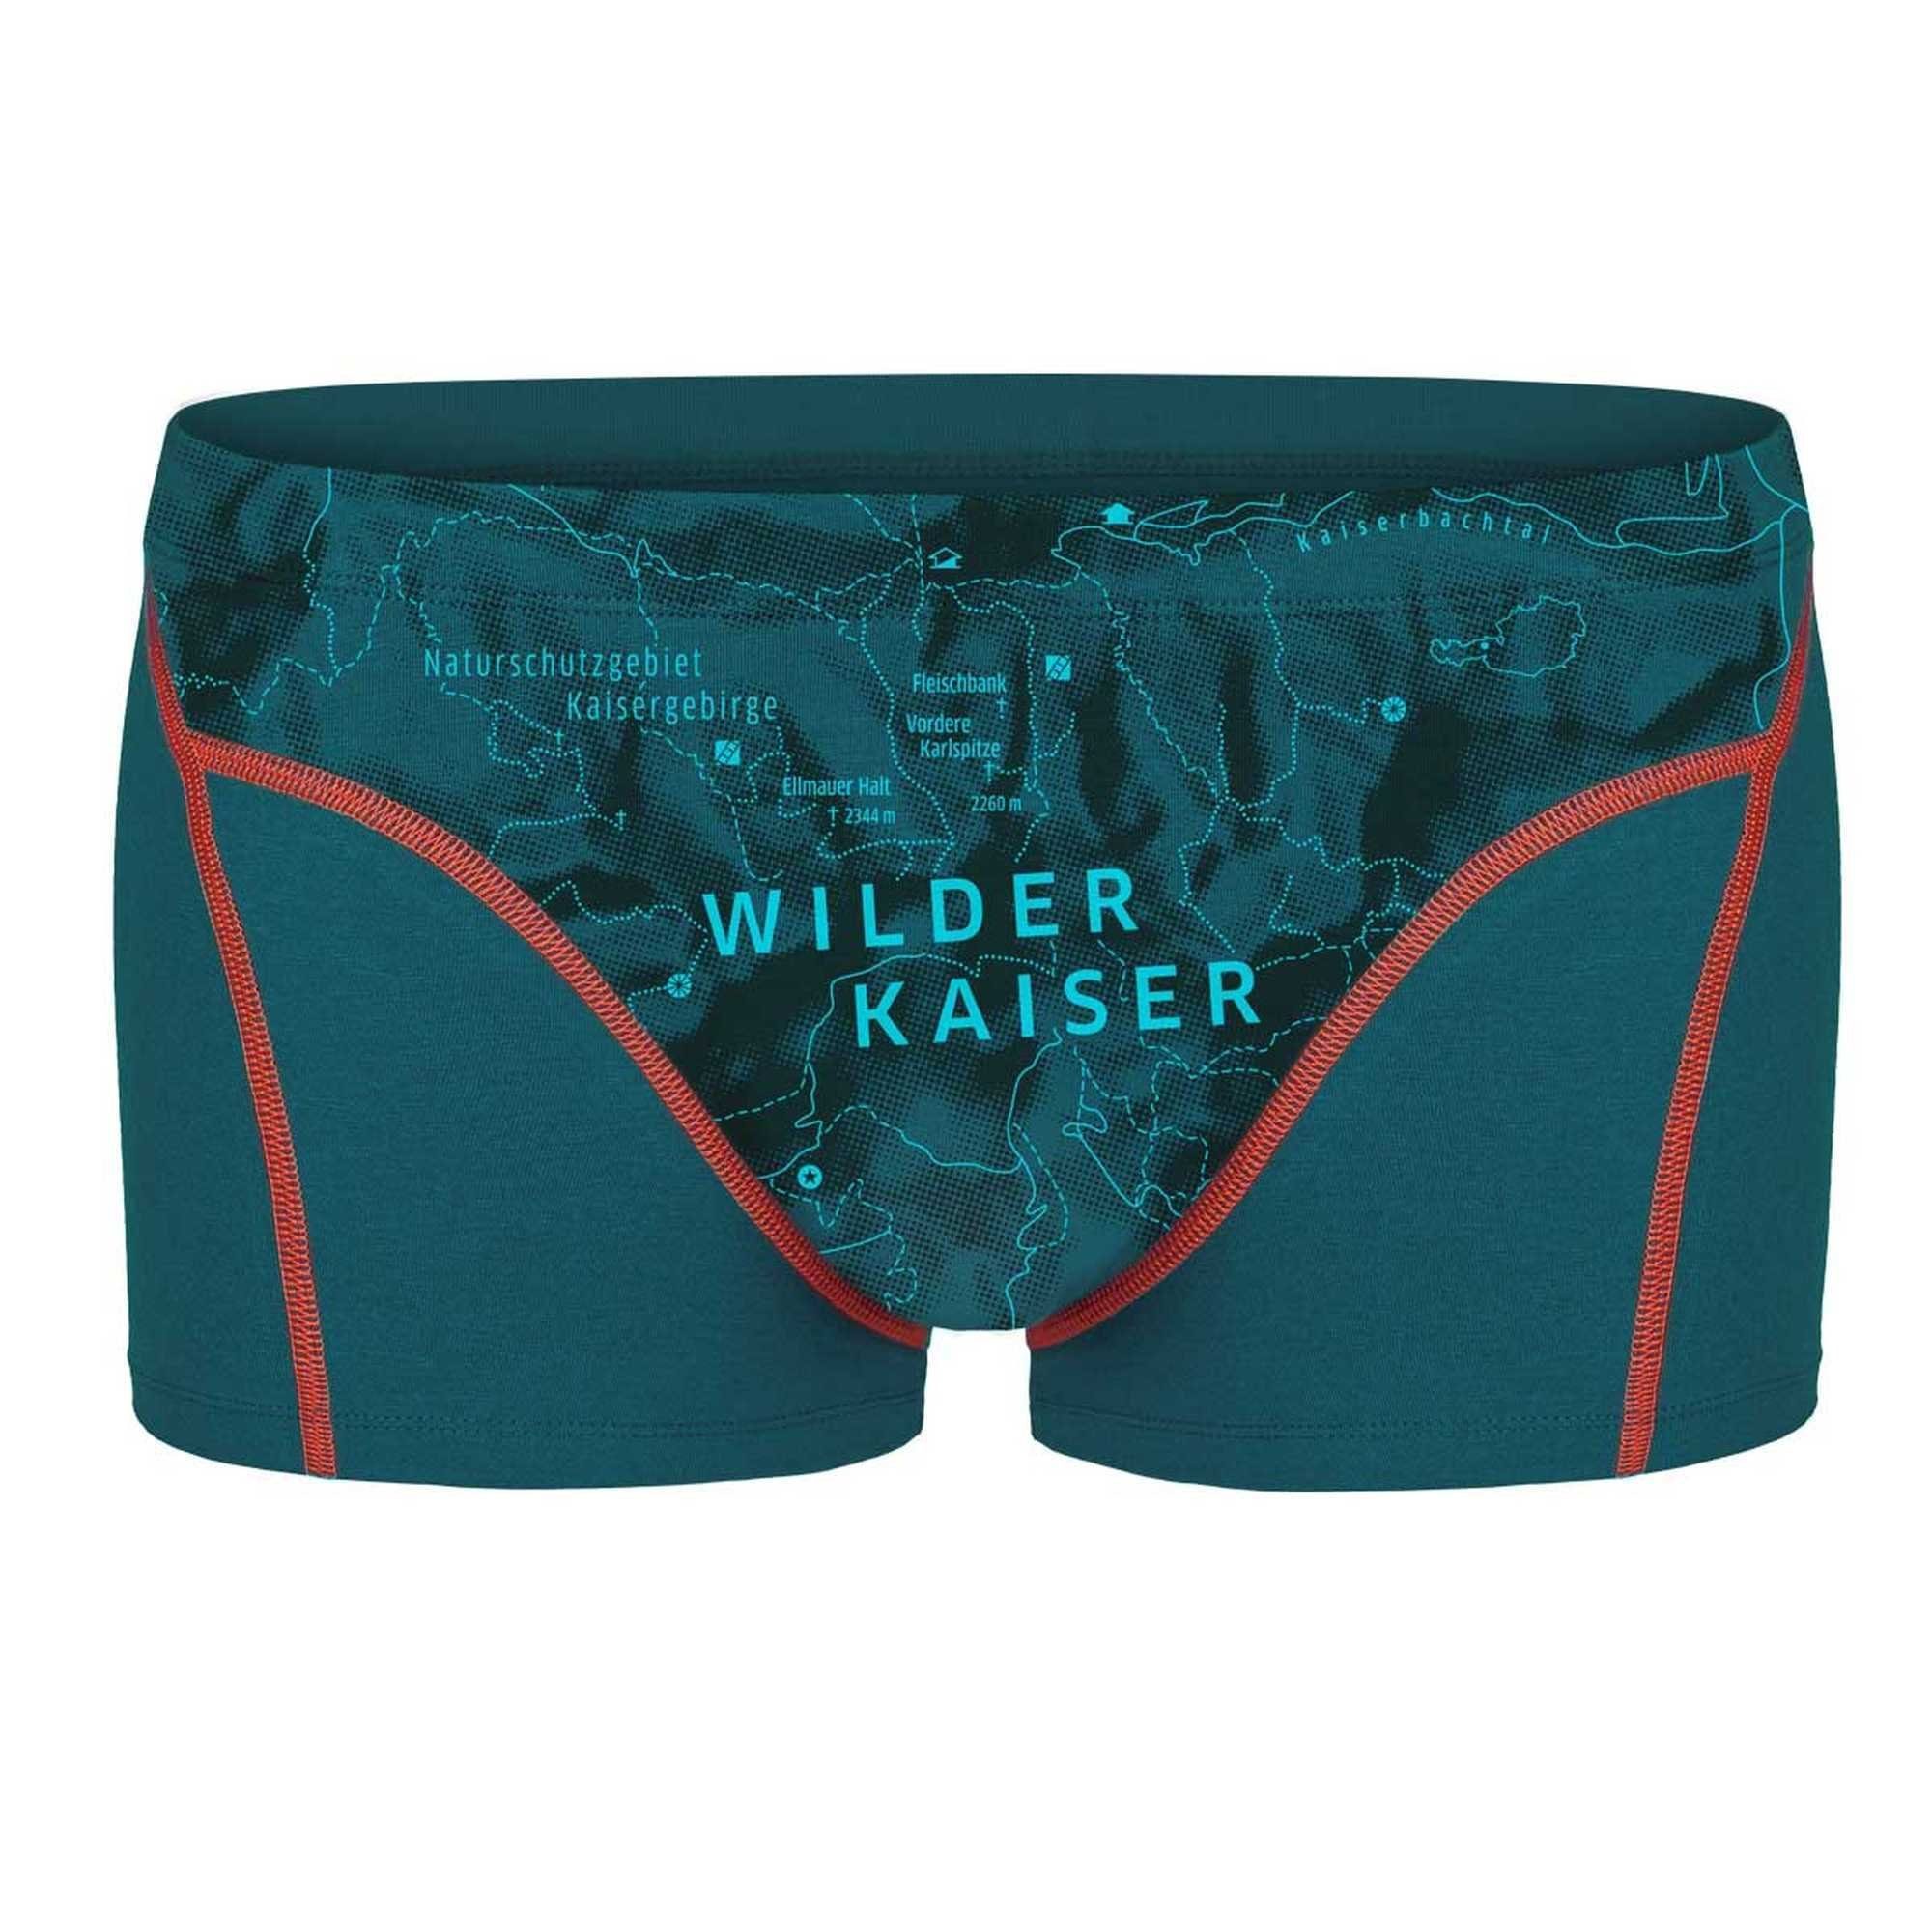 Ein schöner Fleck Erde Boxer Herren Boxershorts - Shorts, Print, Bio-Baumwolle Wilder Kaiser (Türkis)